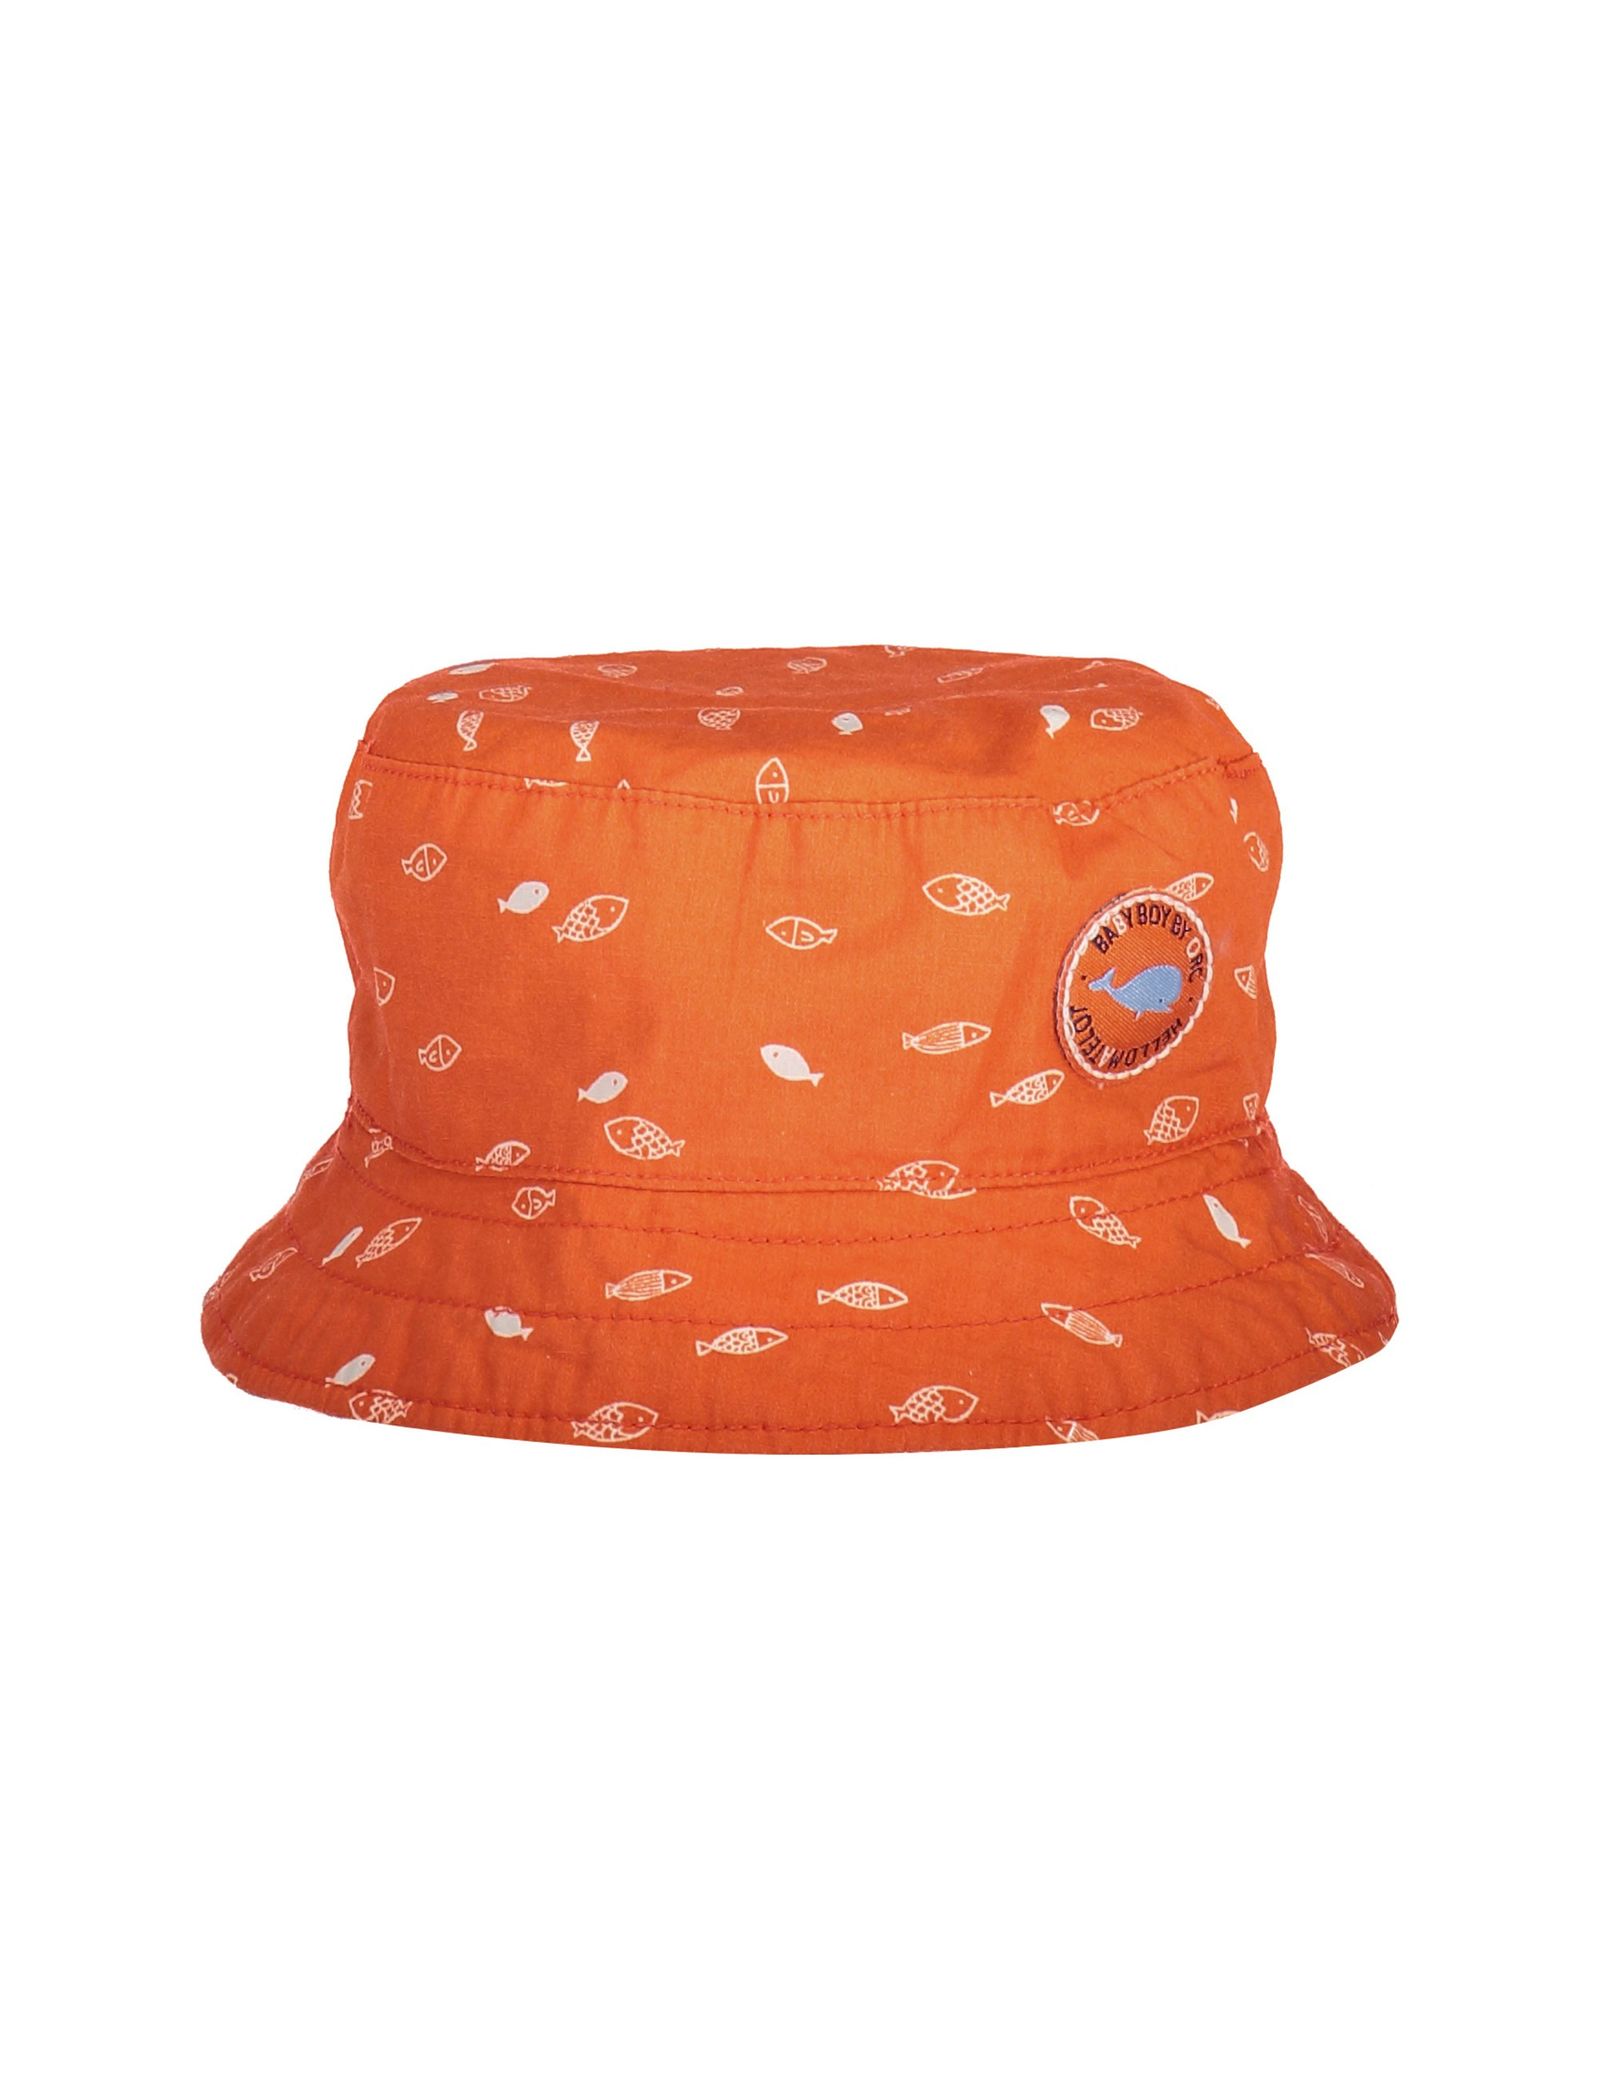 کلاه پارچه ای طرح دار نوزادی دخترانه - ارکسترا - نارنجي - 2